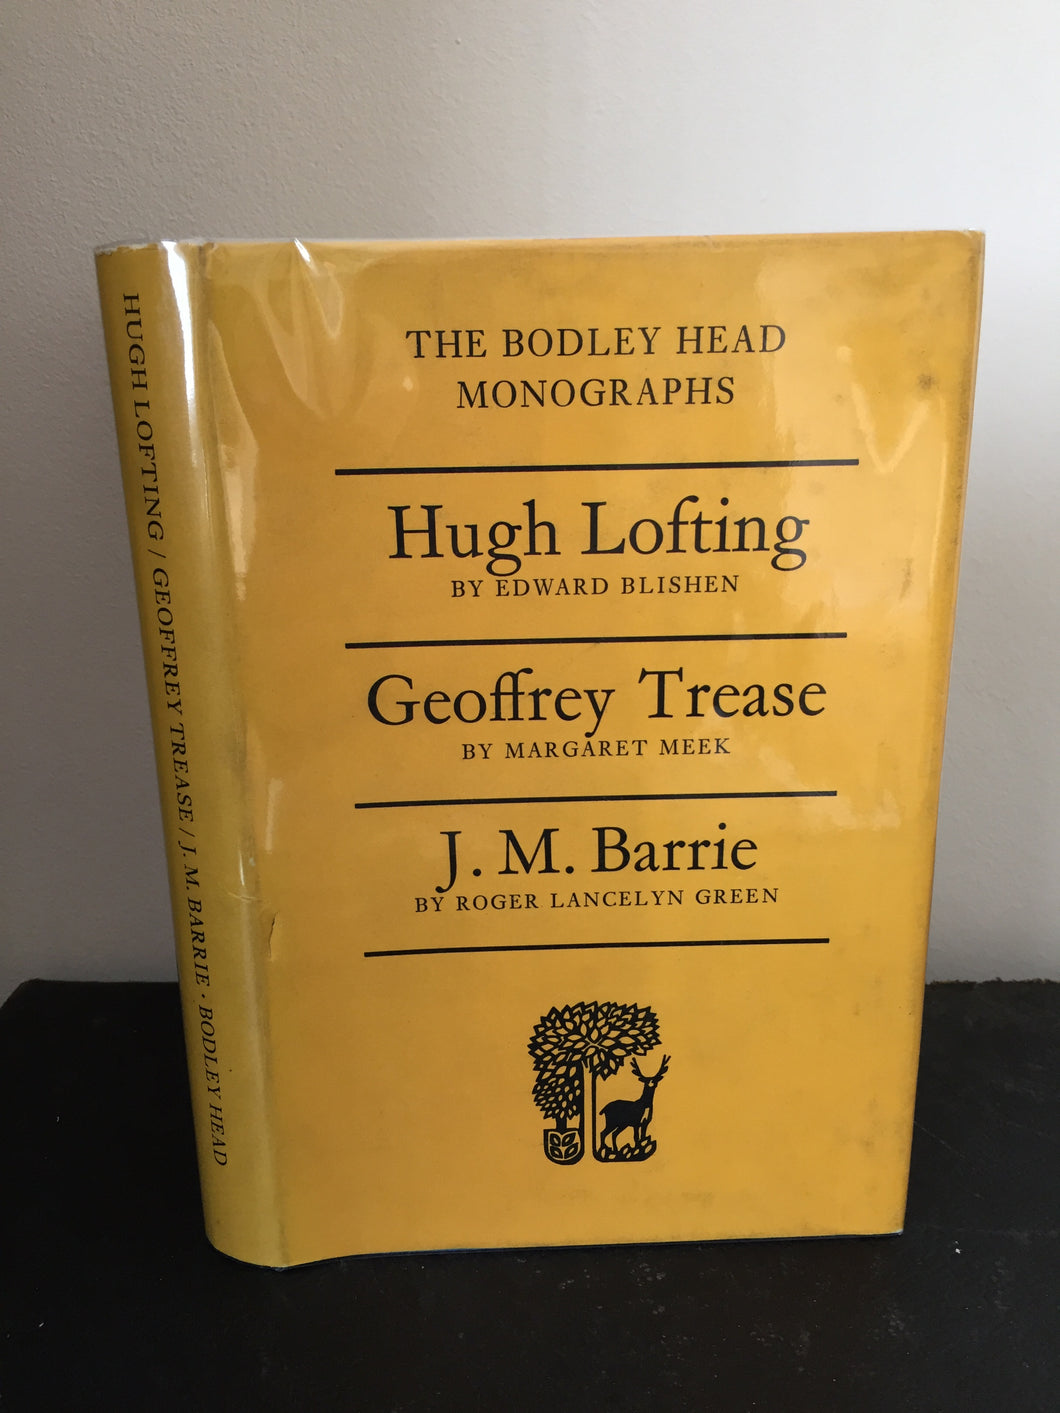 The Bodley Head Monographs: Hugh Lofting, Geoffrey Trease & J.M. Barrie